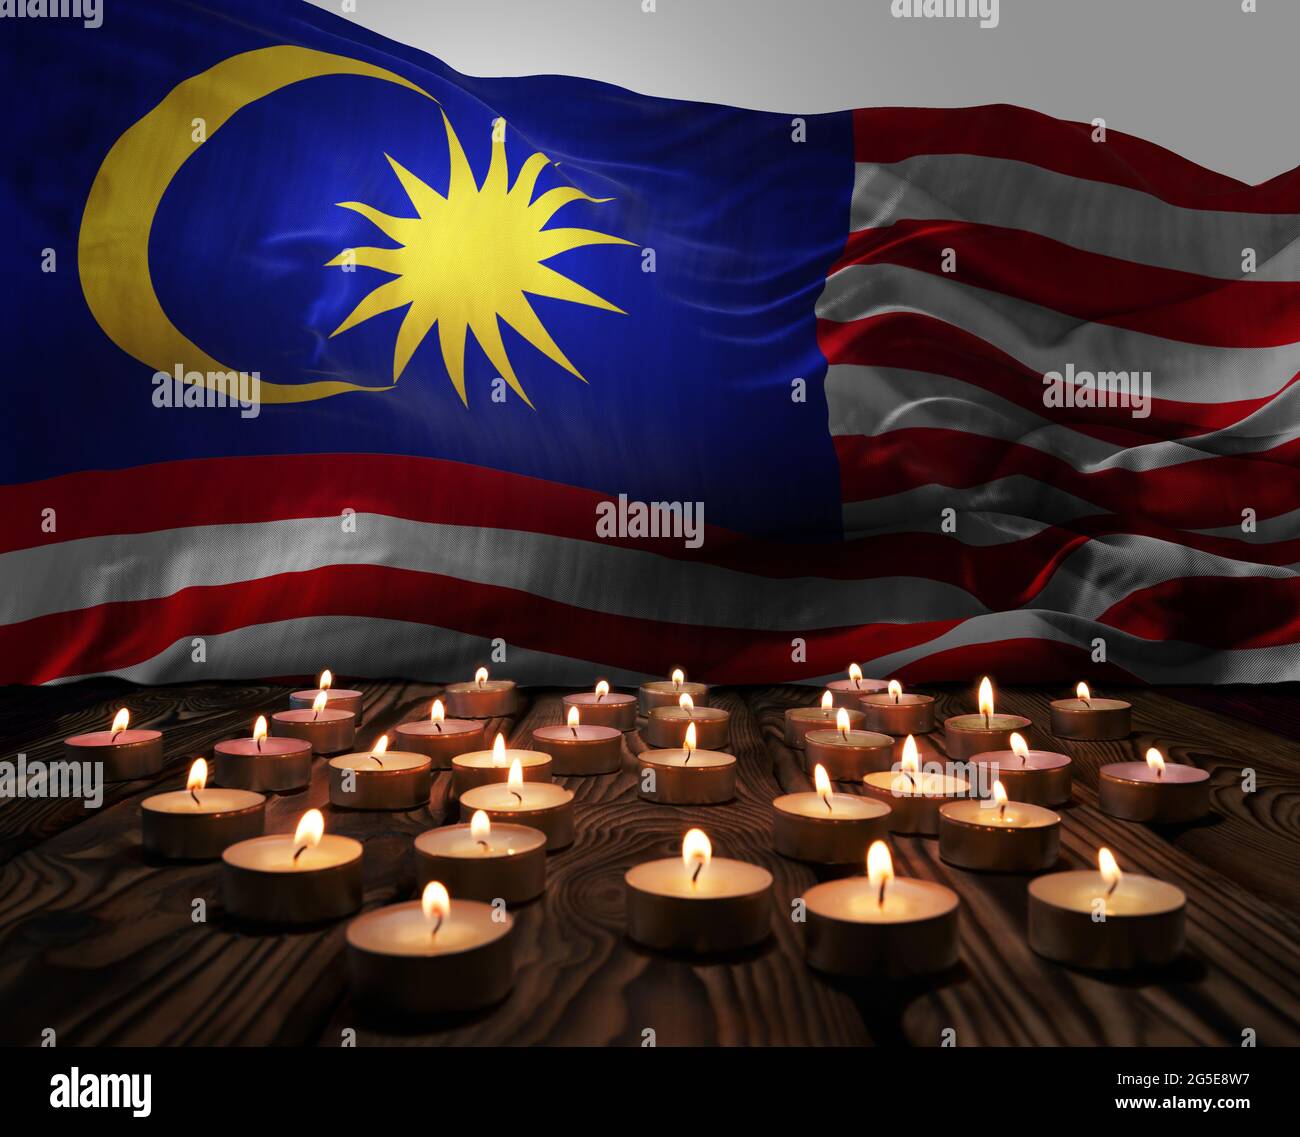 Deuil de bougies allumées sur le drapeau national de la Malaisie. Week-end du souvenir, journée des anciens combattants patriotes, Journée nationale du souvenir. Gravure Banque D'Images